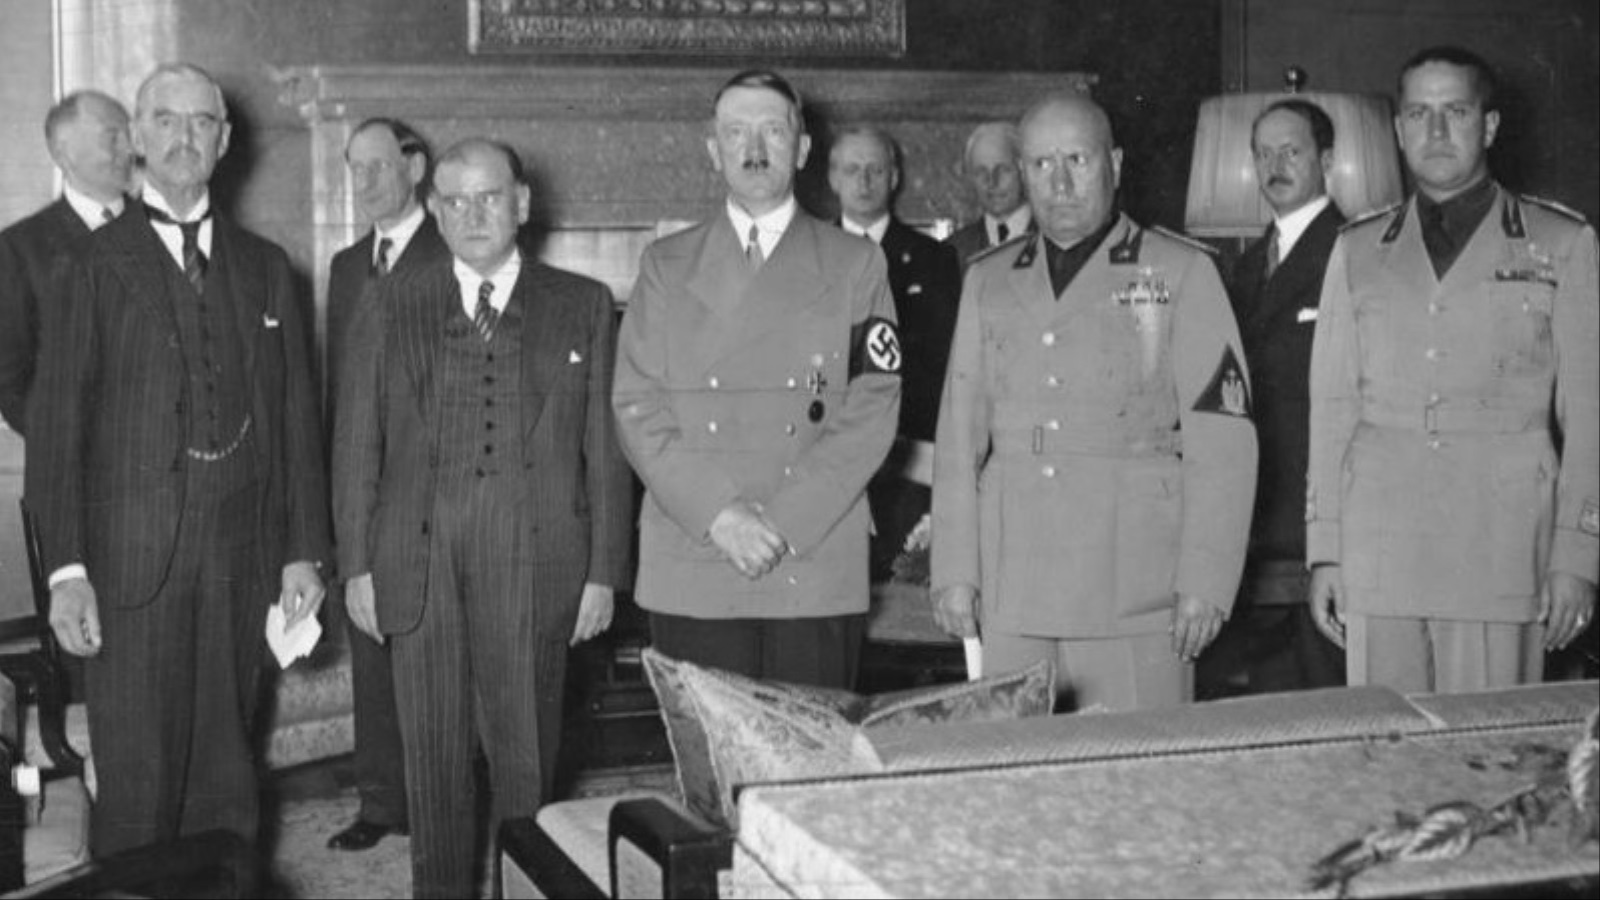 موسوليني وسيانو (على يمين الصورة بالزي الرسمي) مع هتلر (مواقع التواصل)